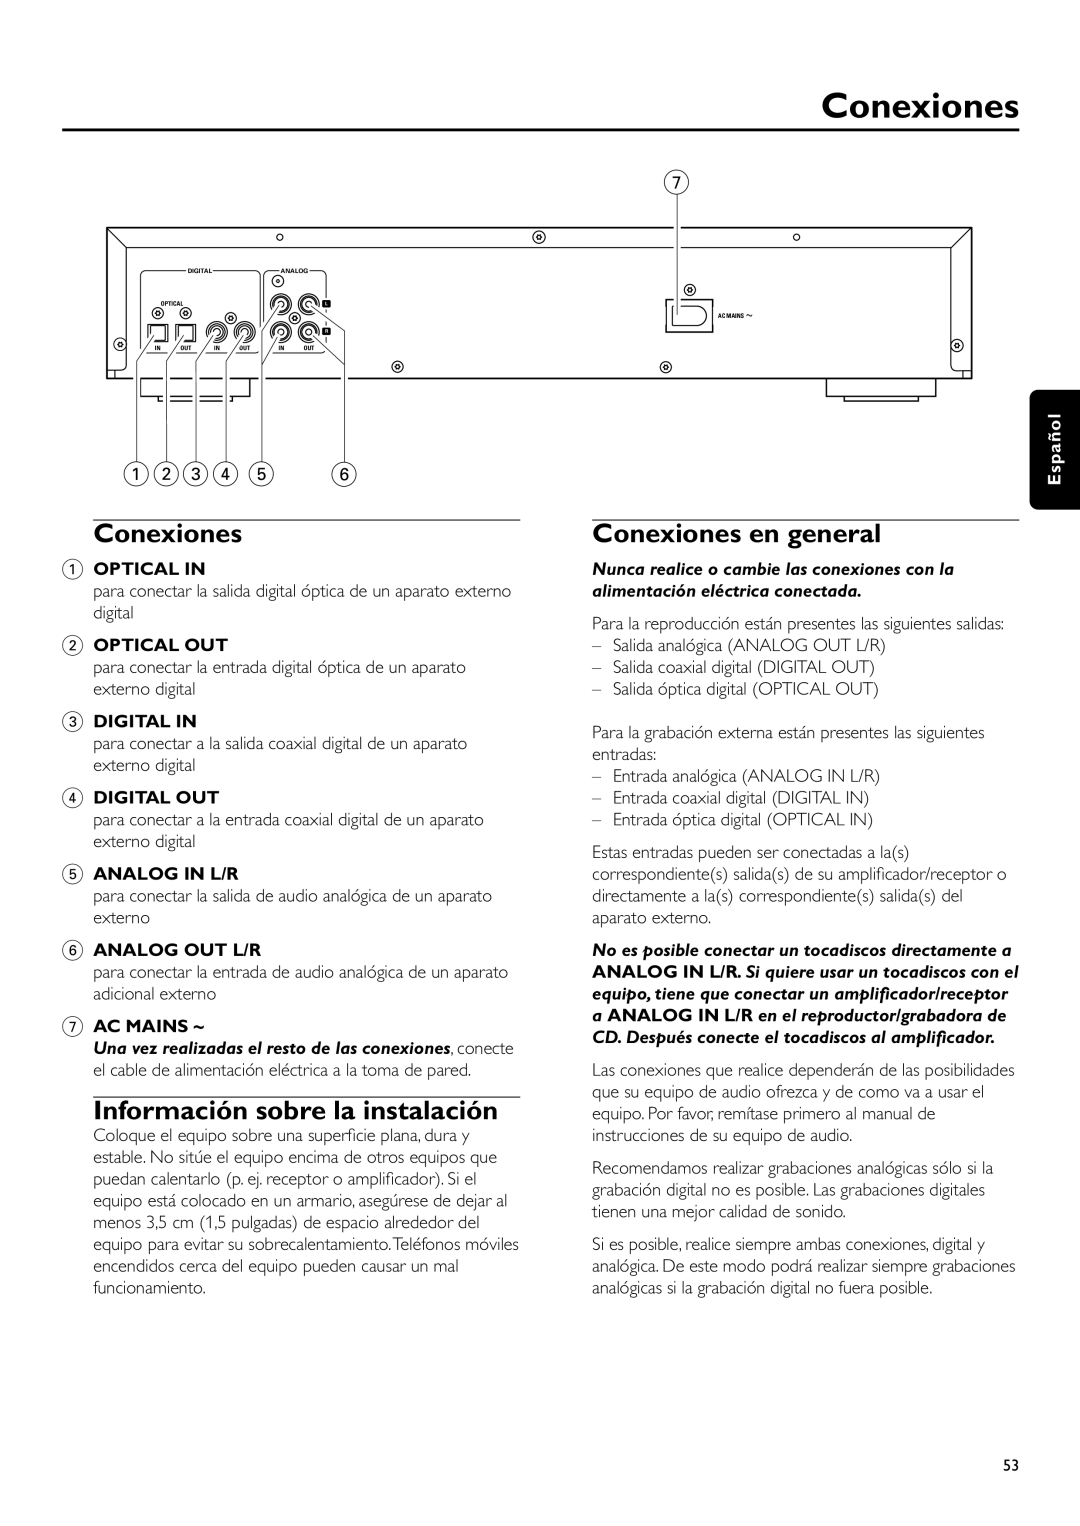 Philips CDR-795 Información sobre la instalación, Conexiones en general, 1234, Optical In, Optical Out, Digital In 